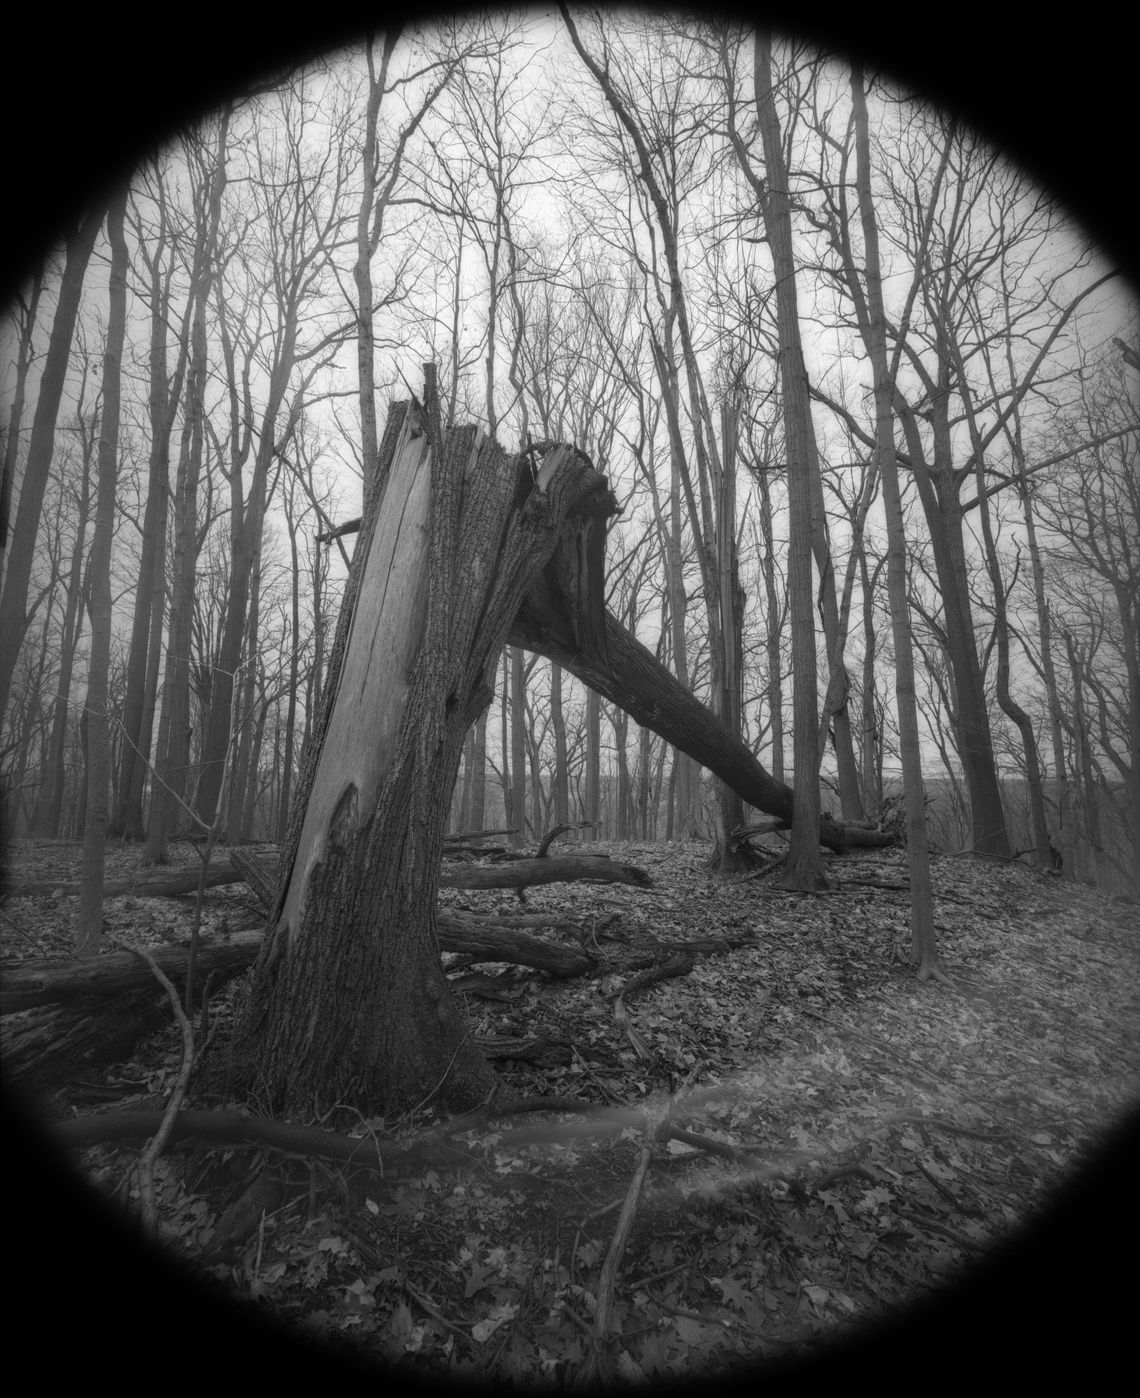 A fallen tree seen from bellow